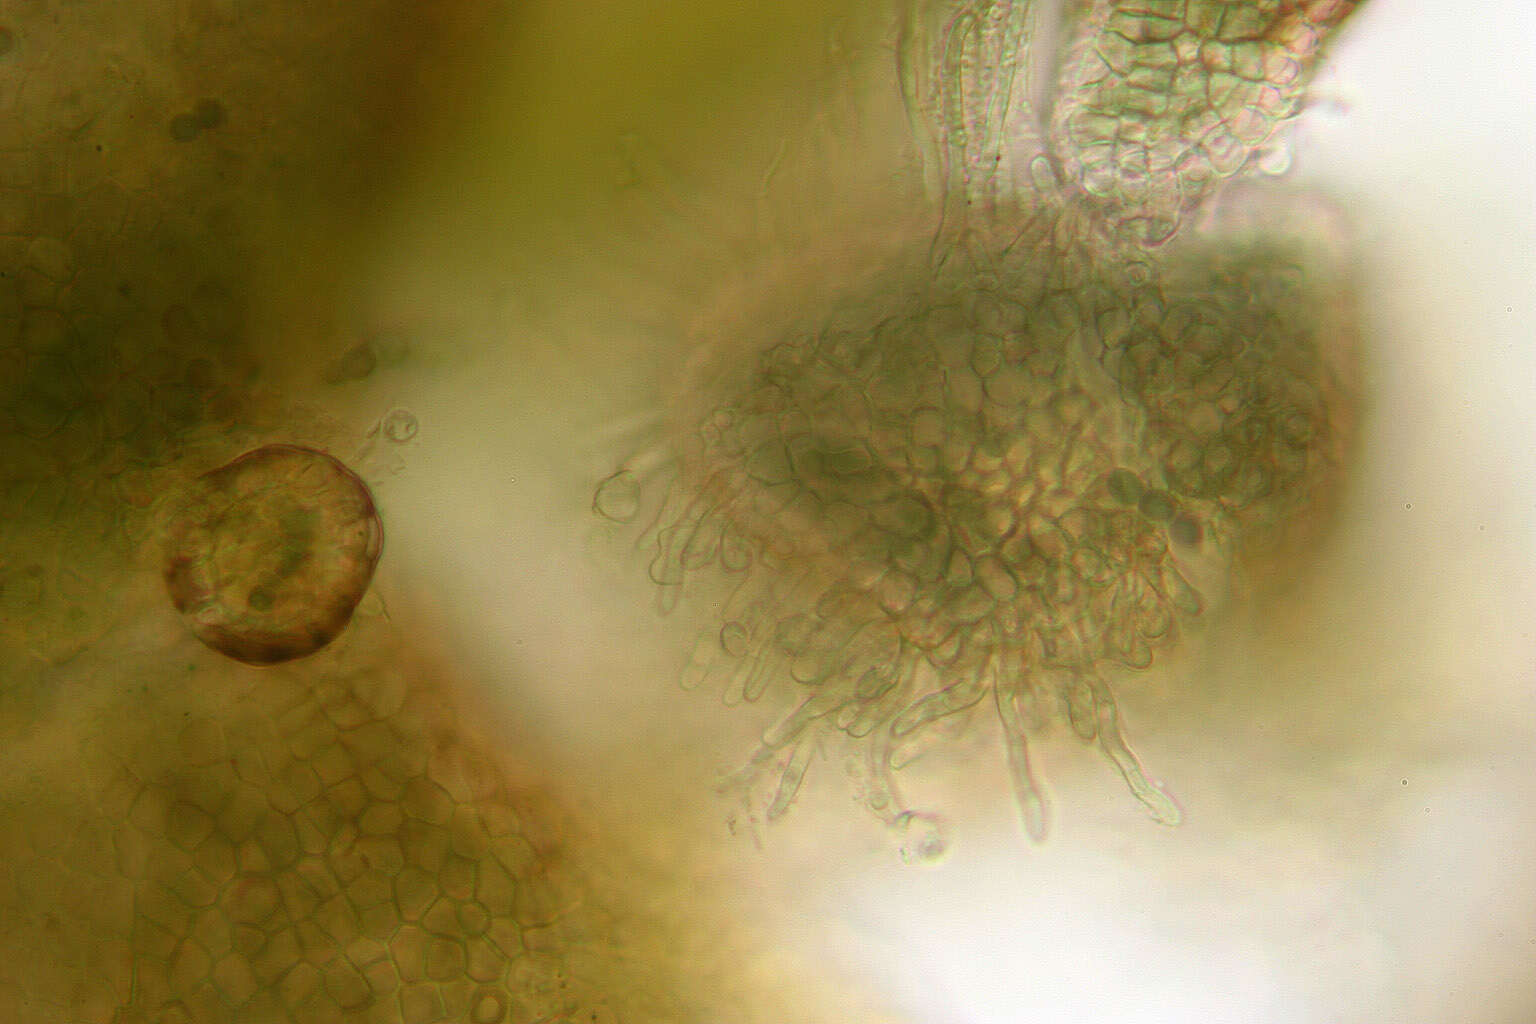 Image of gelatinous skin lichen